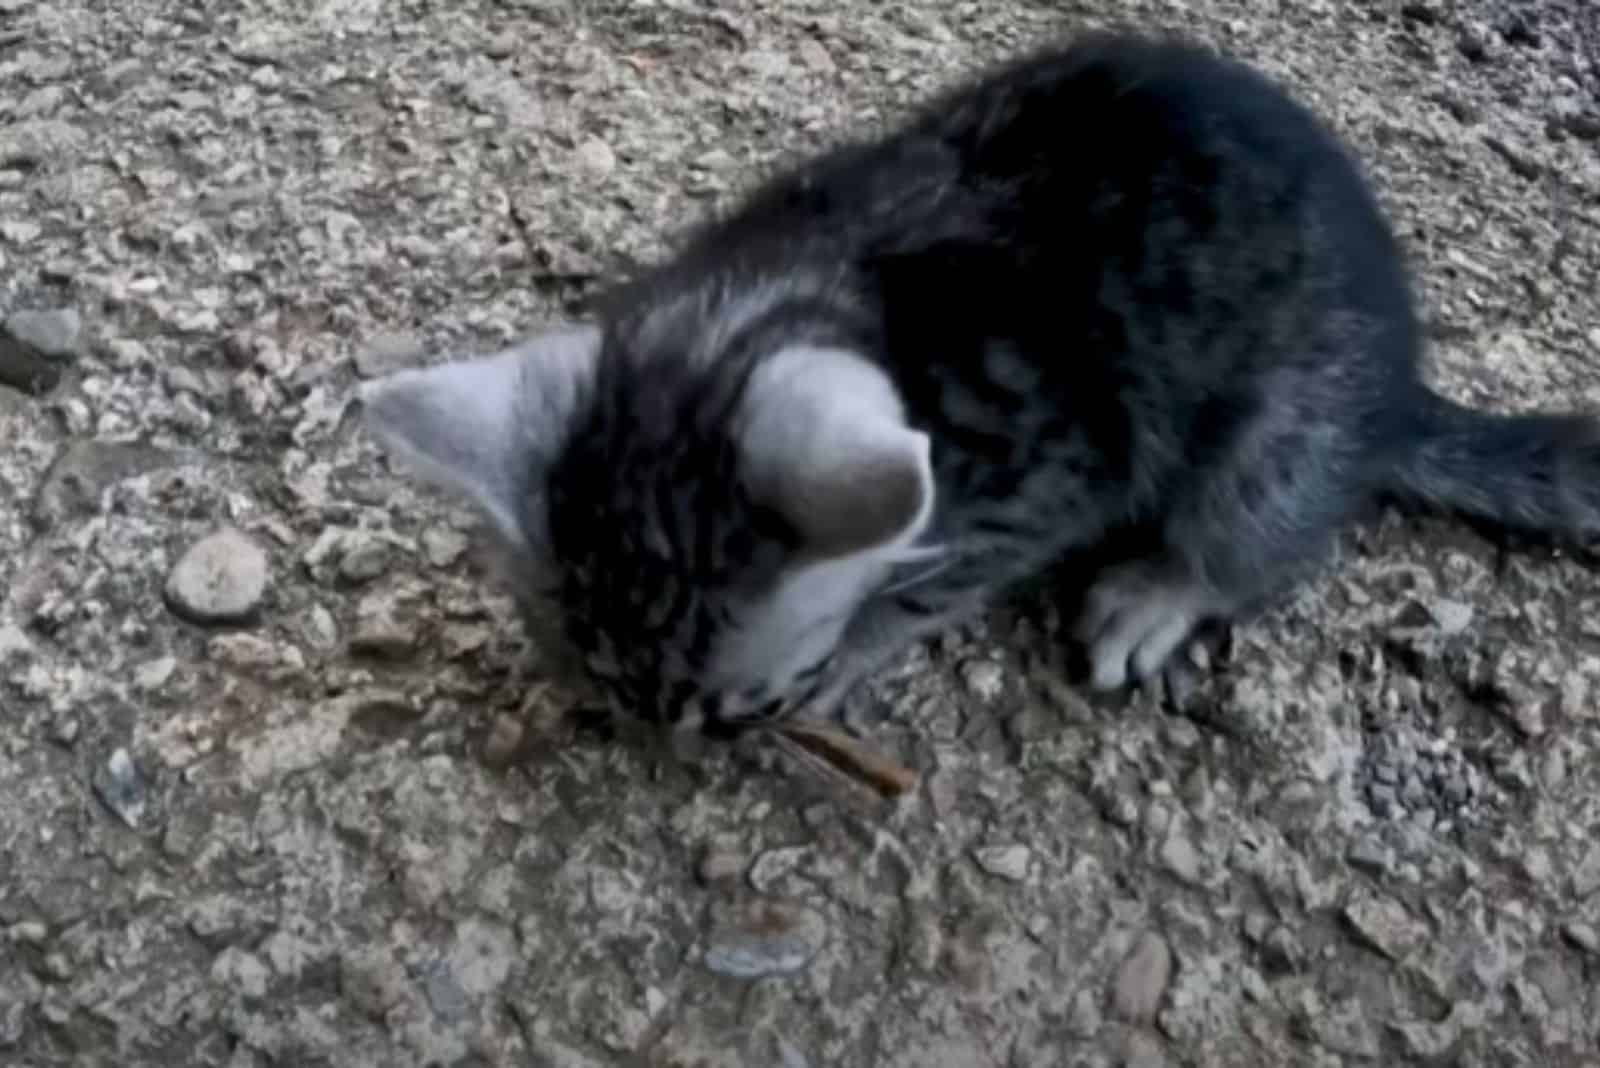 lost tabby kitten eating